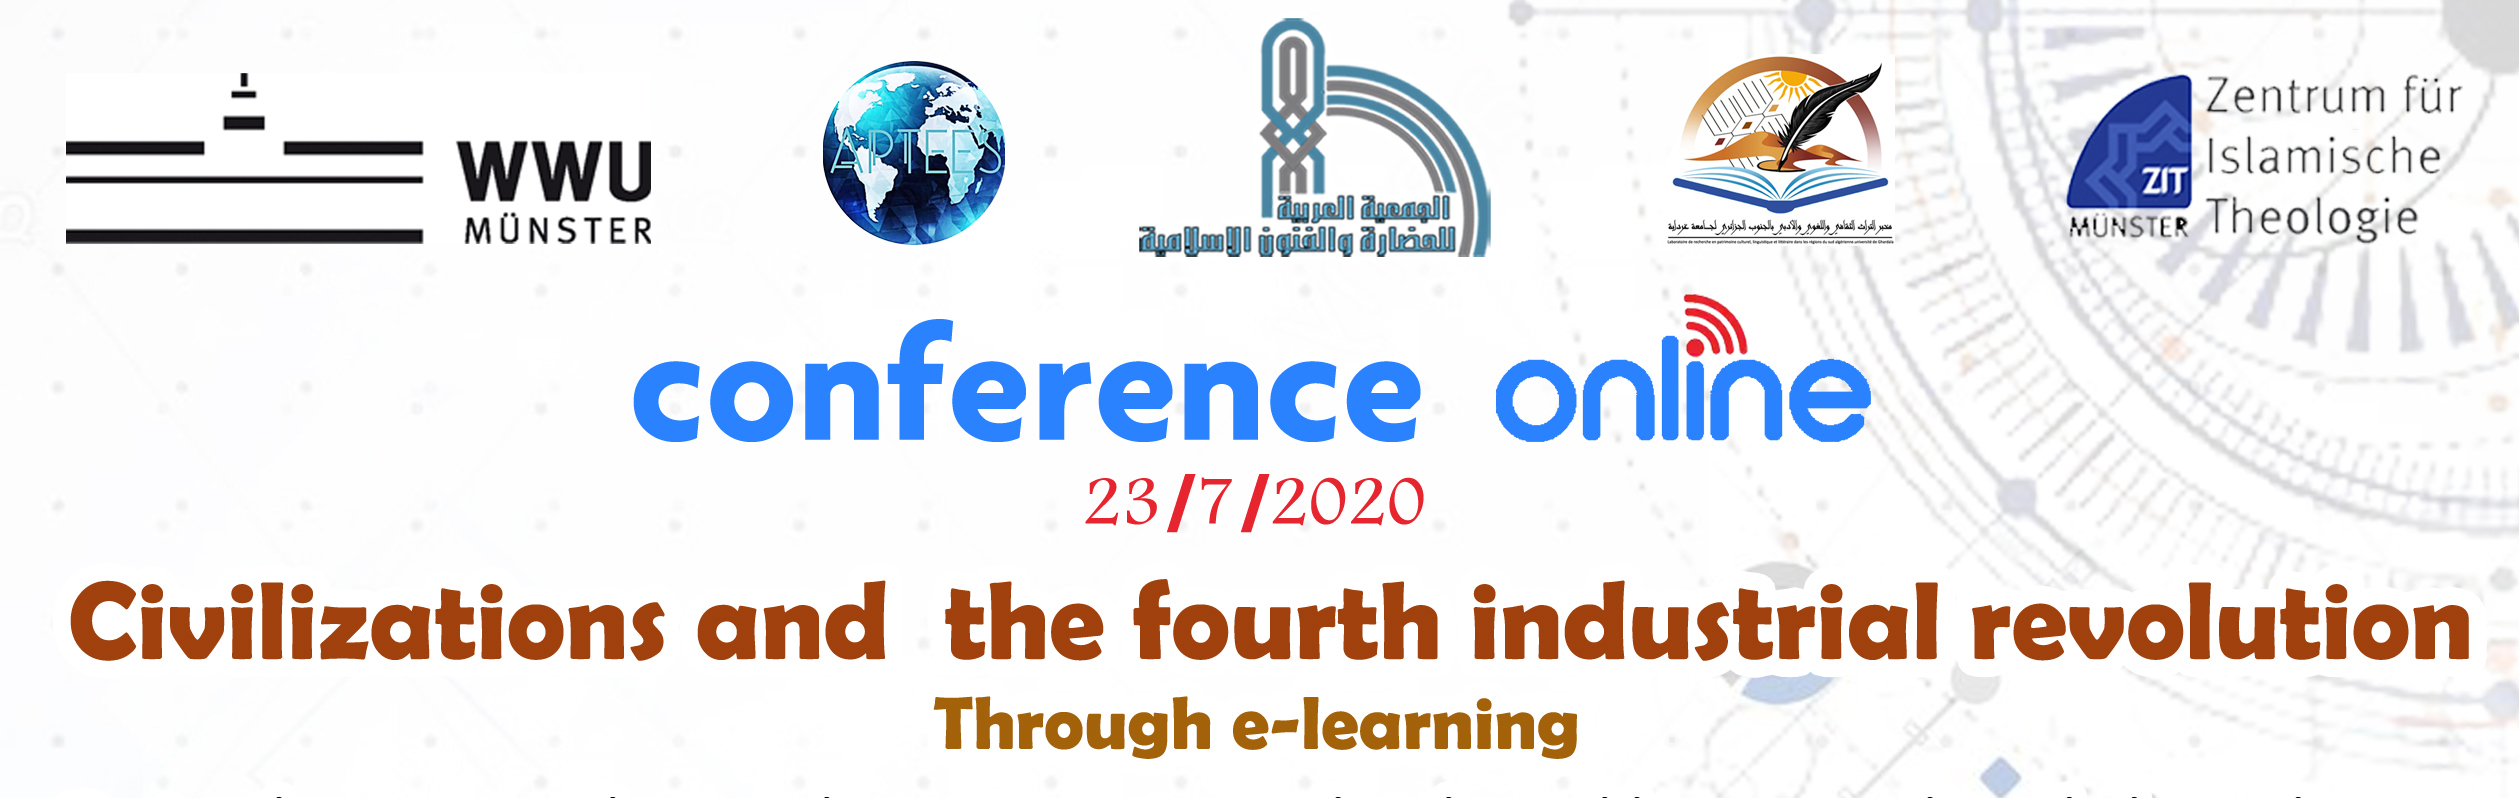 المؤتمر الثامن الحضارات والثورة الصناعية الرابعة في ظل التعليم الإلكتروني